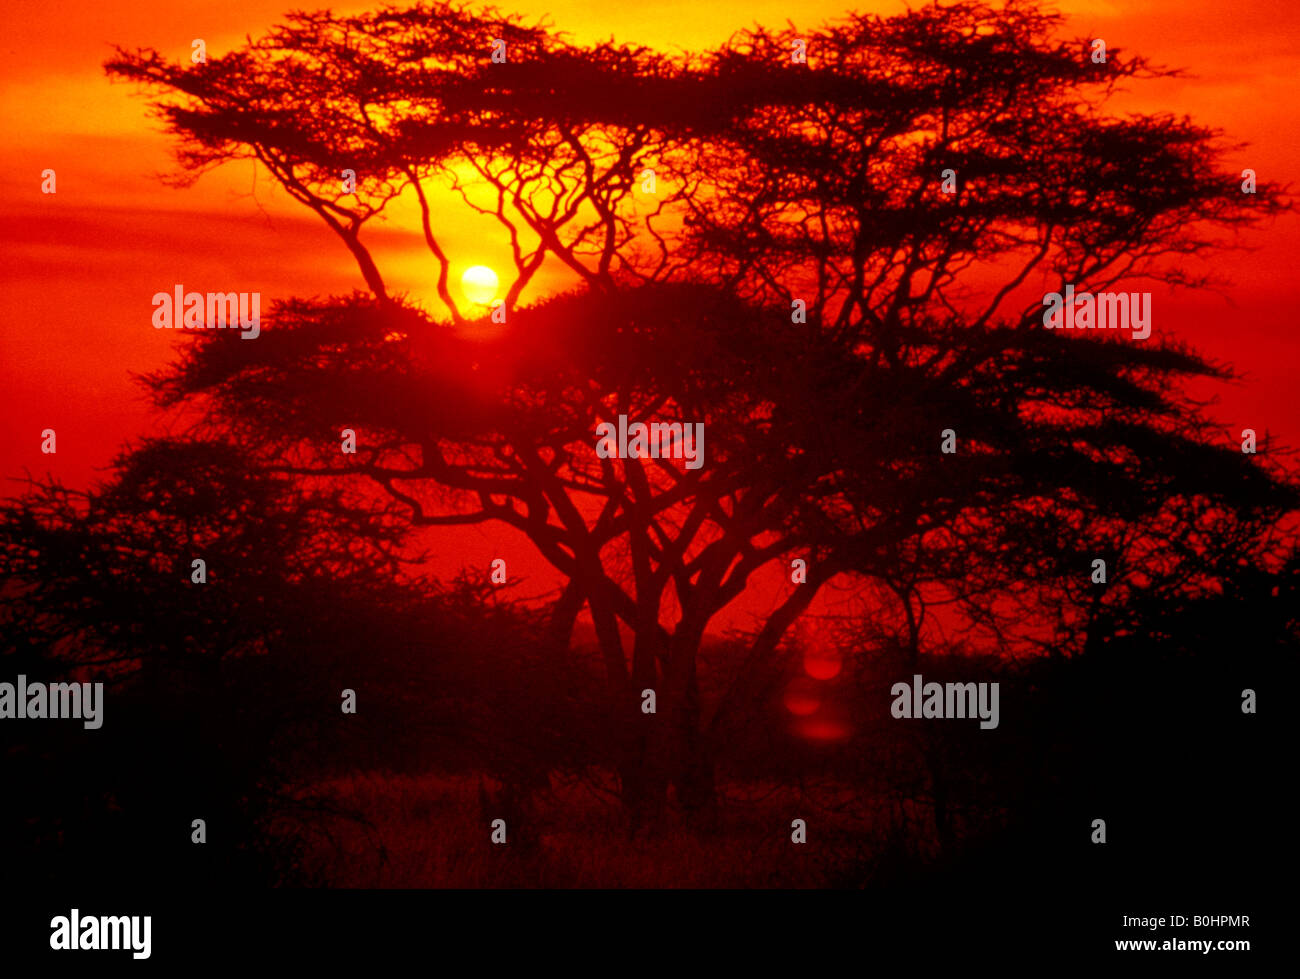 La silhouette d'un arbre par un coucher du soleil orange dans la brousse, au Kenya. Banque D'Images